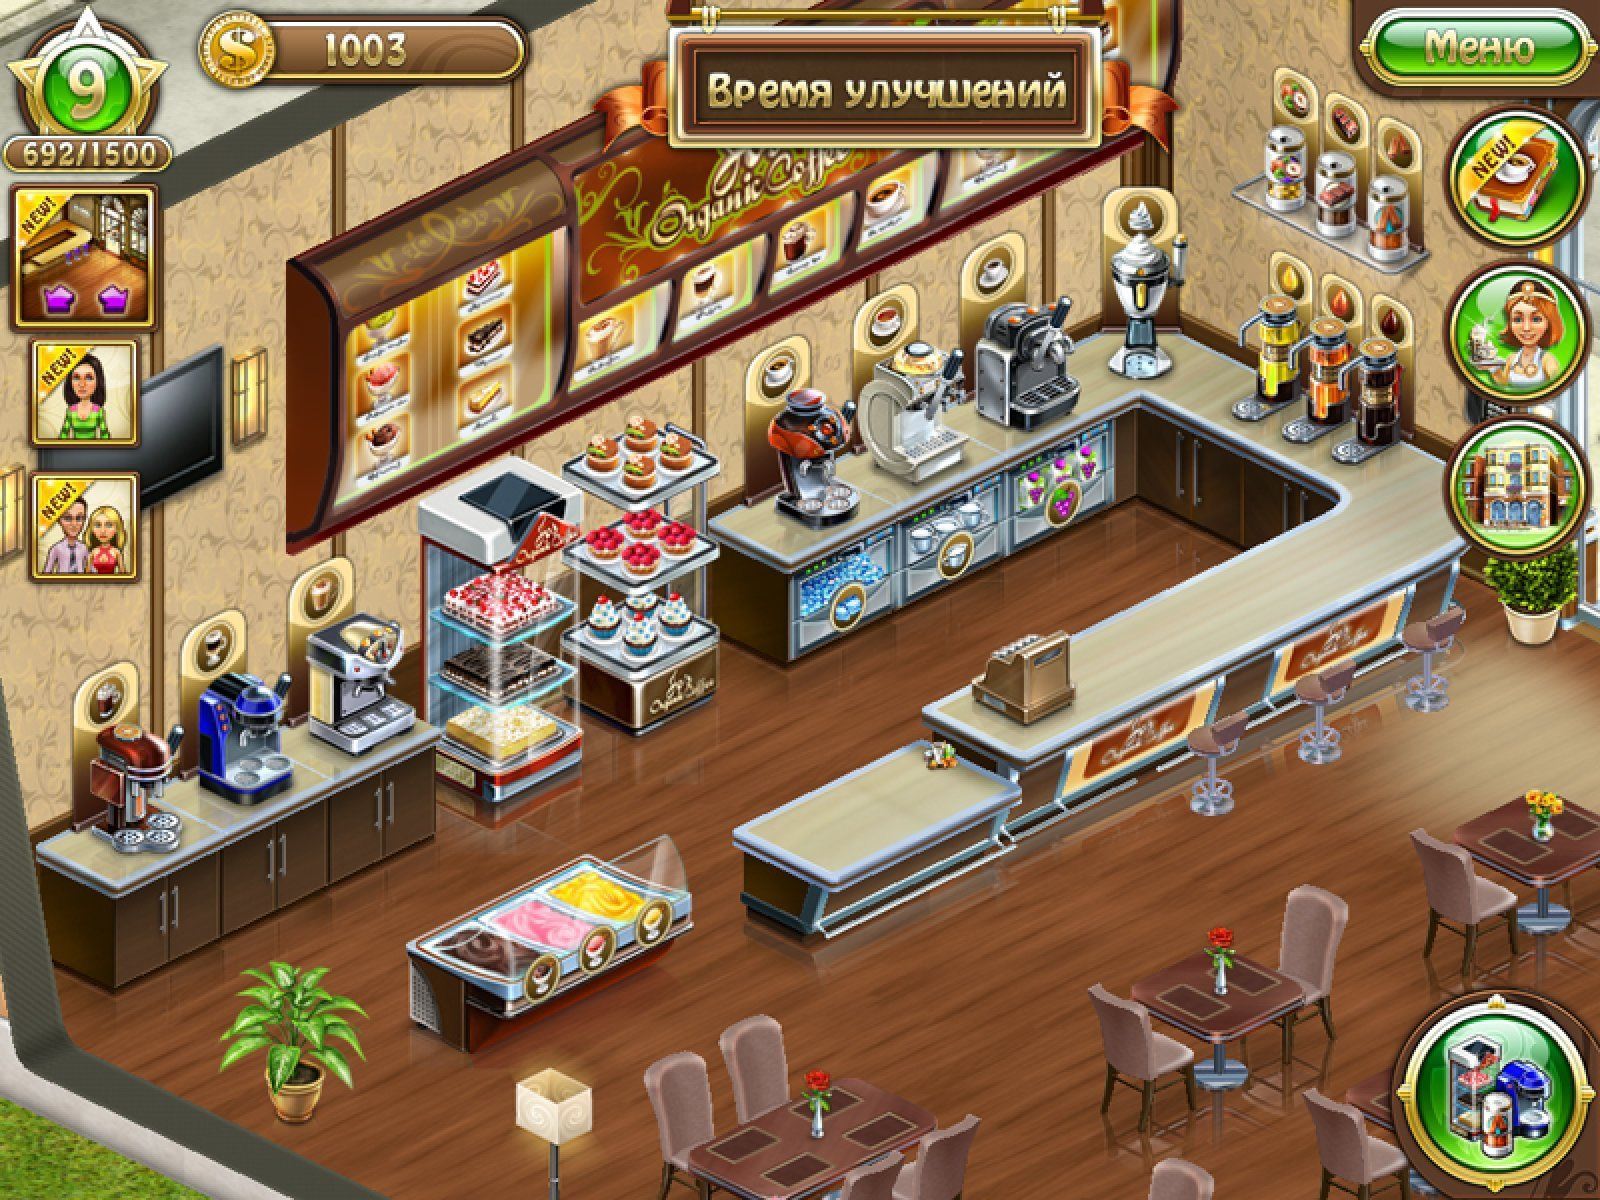 Игра бизнес мечты кофейня 2